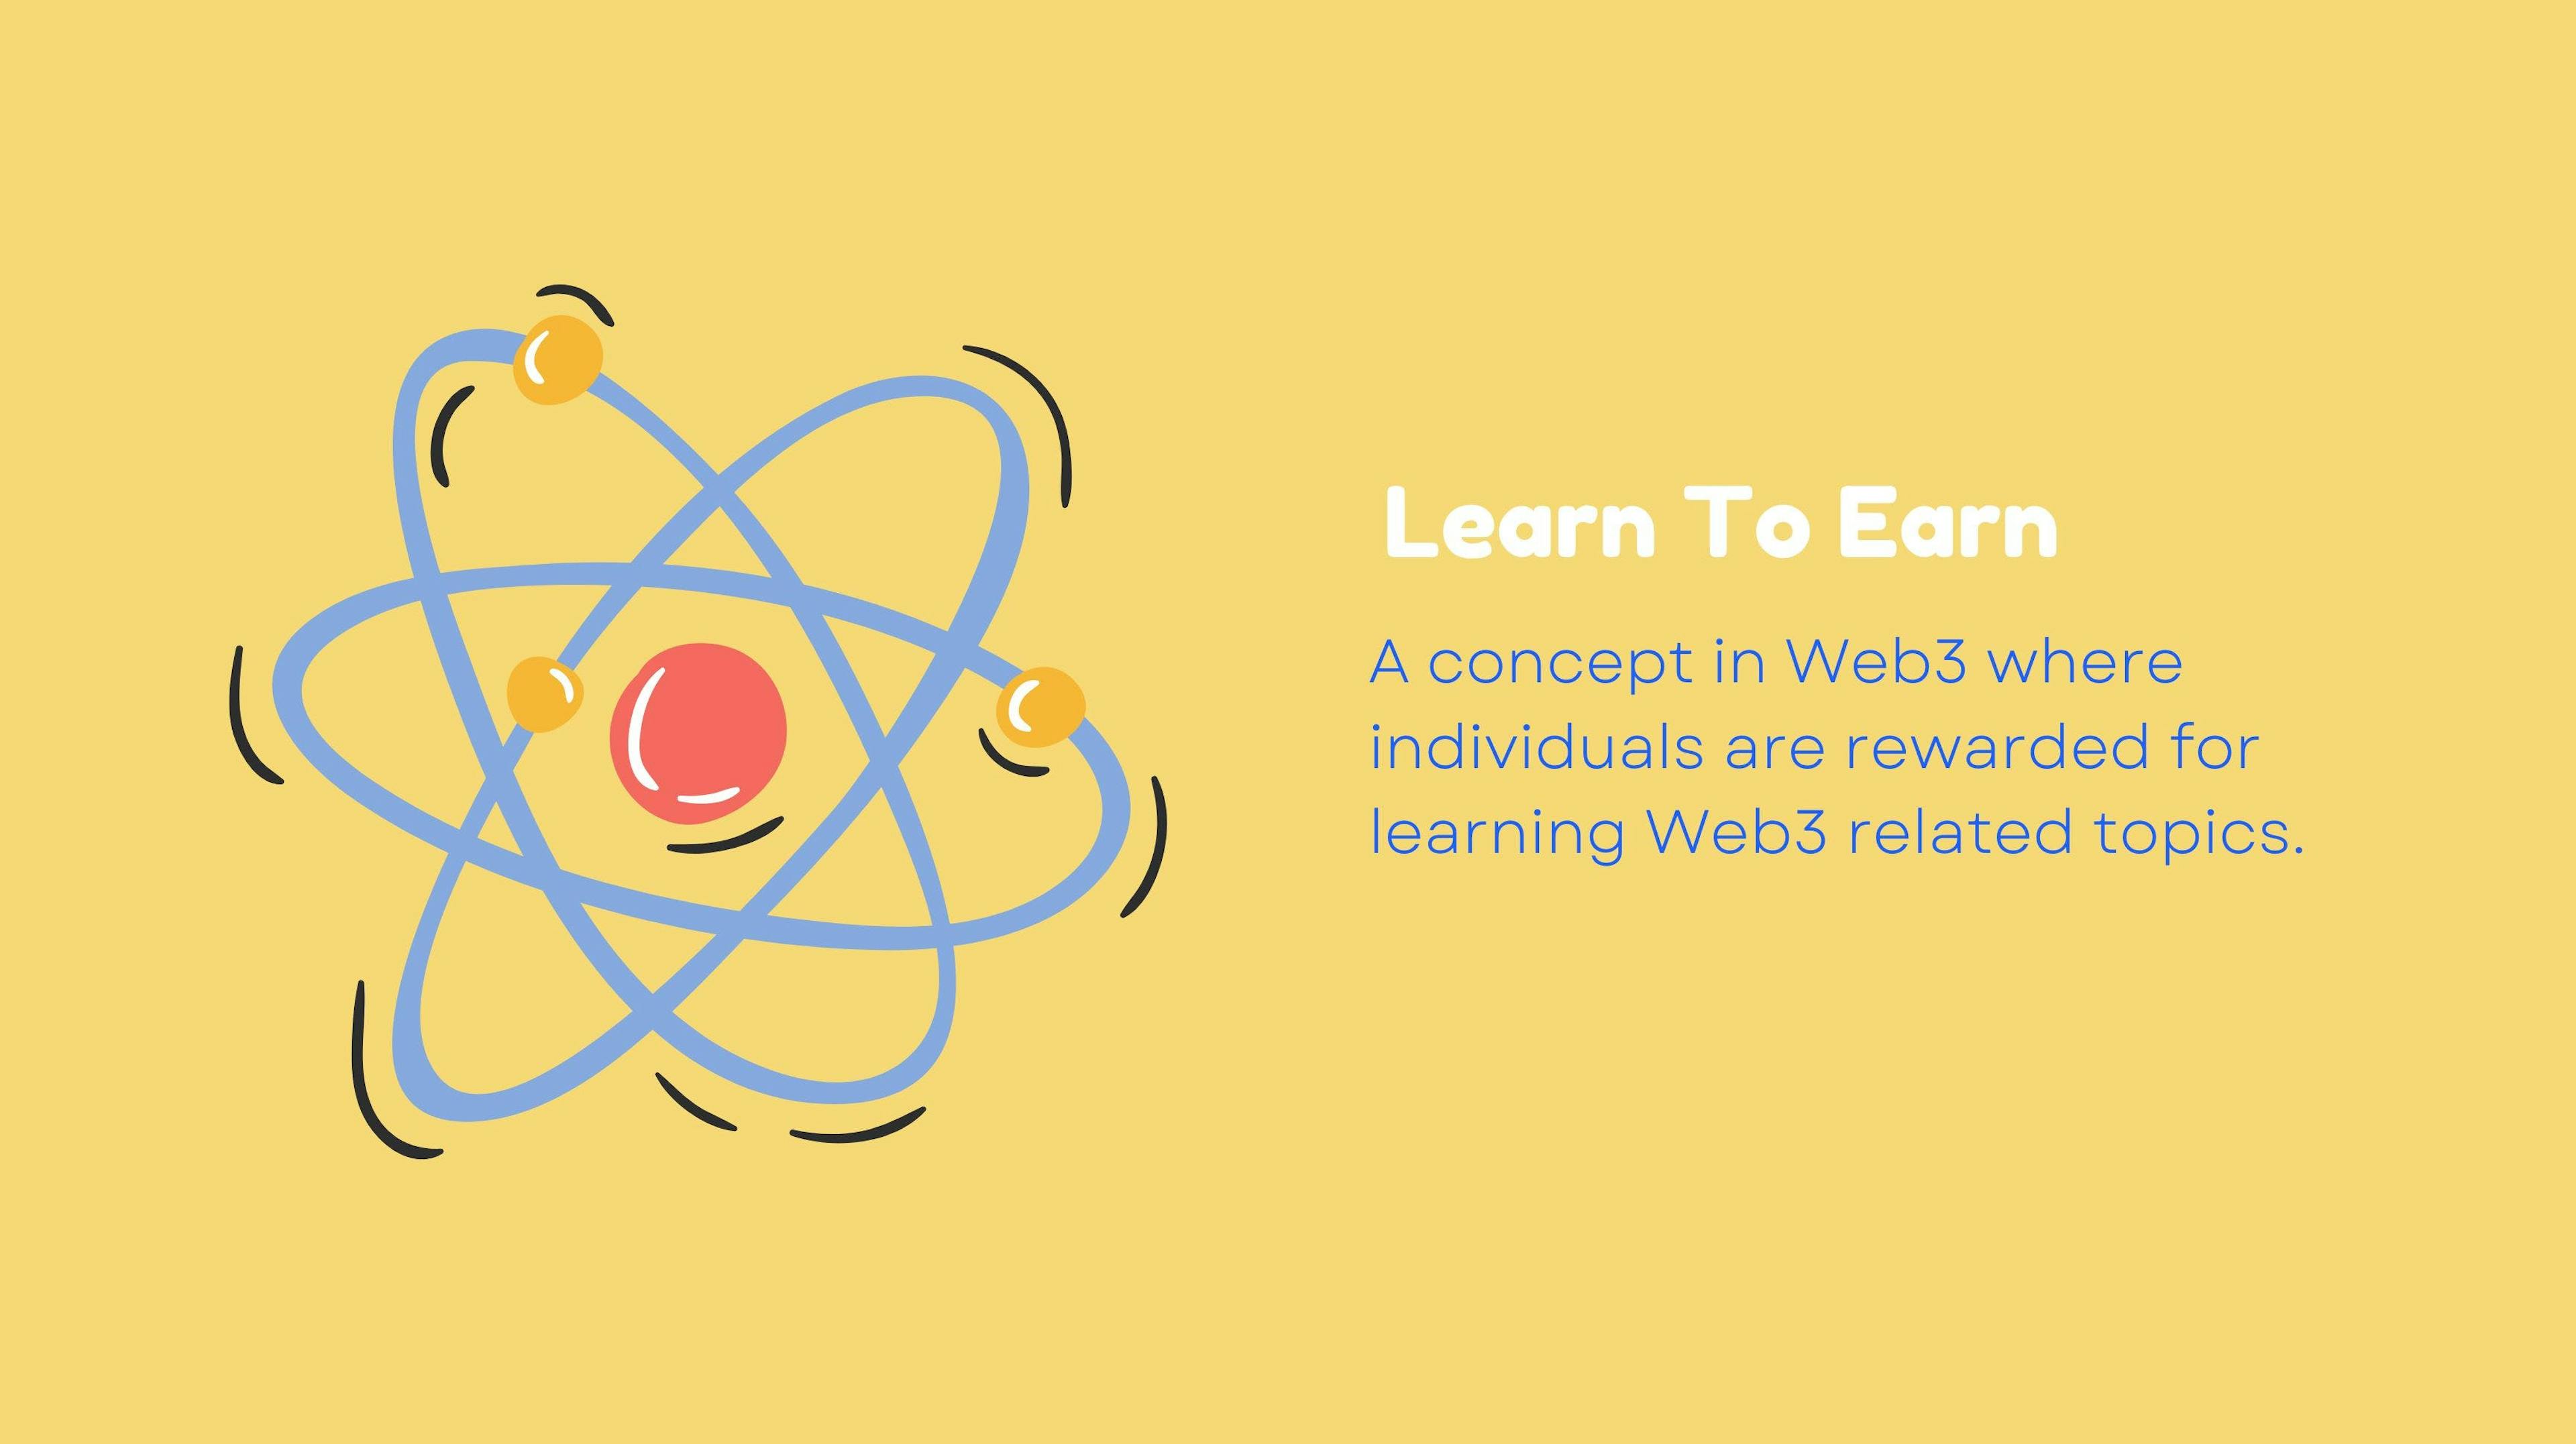 Learn to earn in Web3